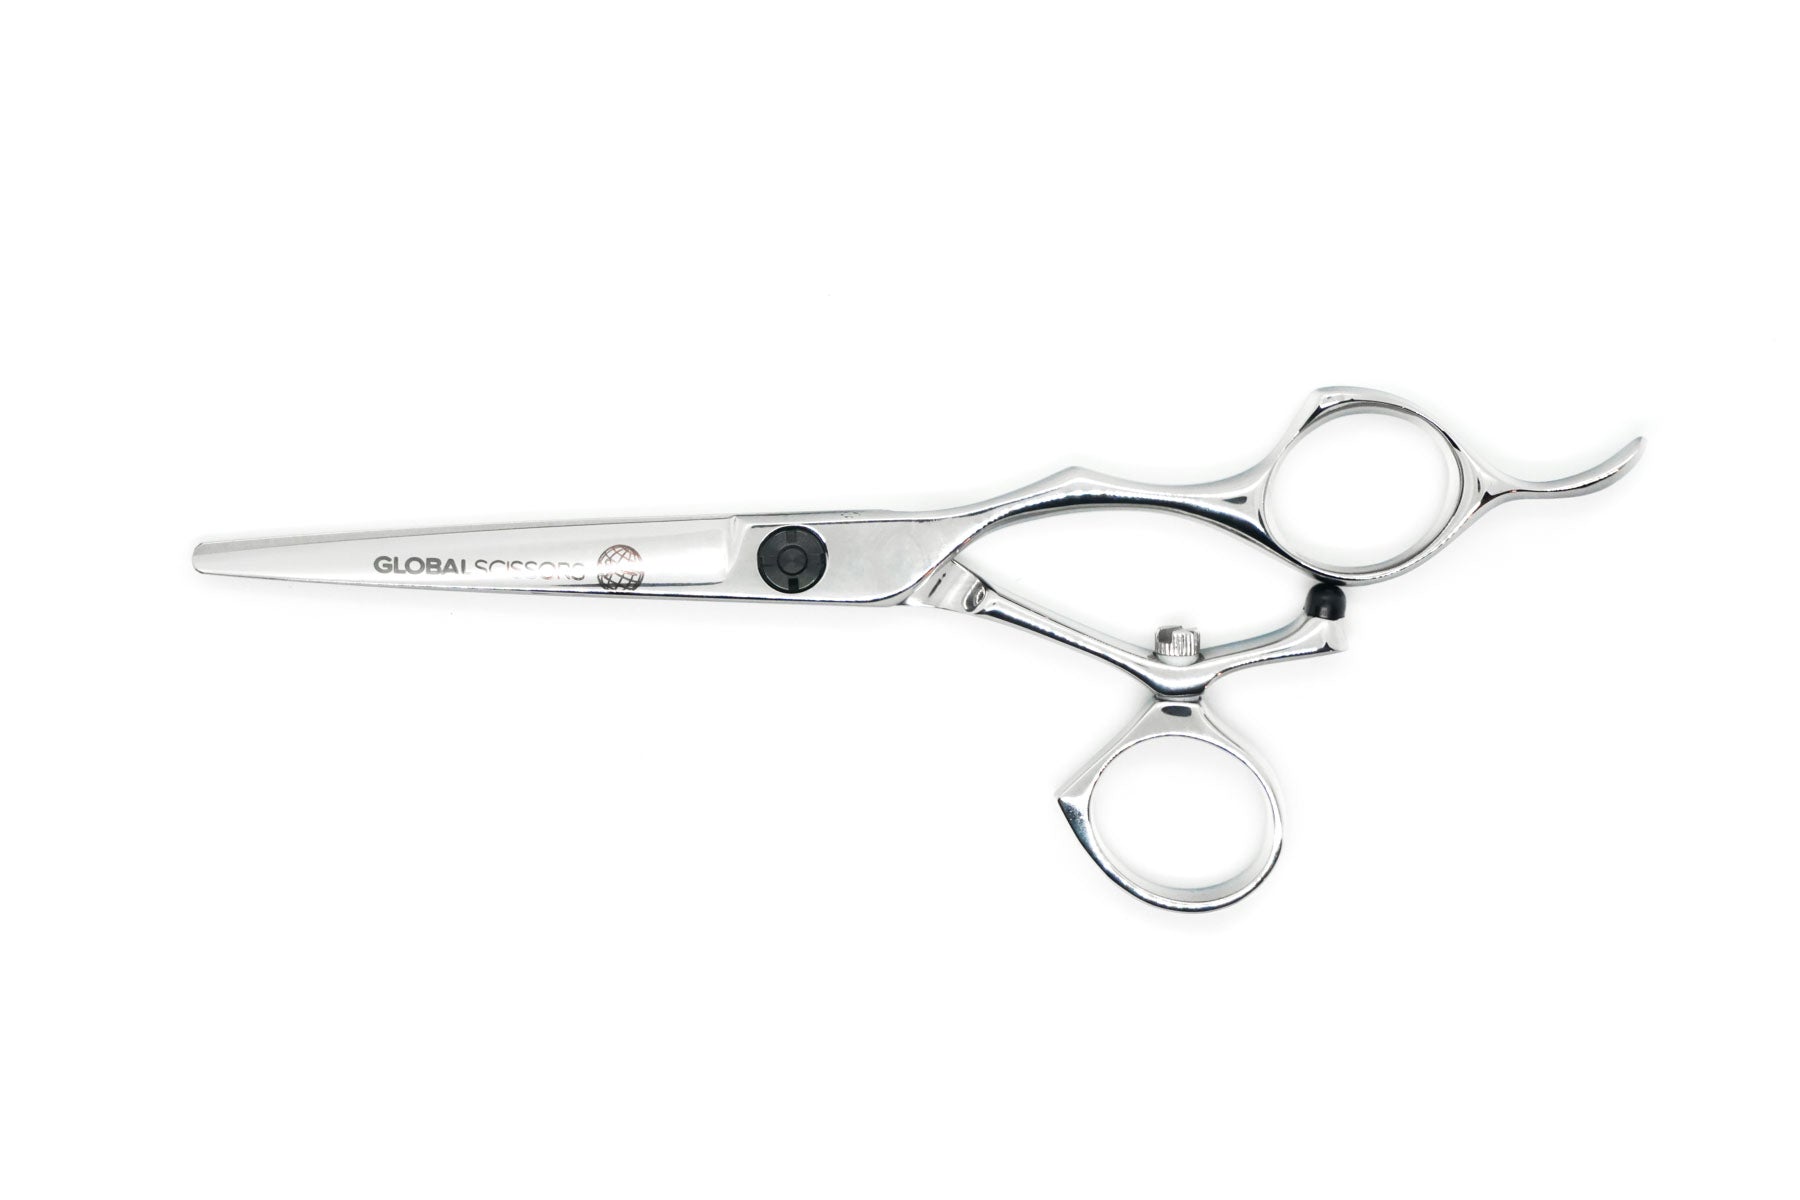 Rowan 6 inch Swivel Cutting Scissor